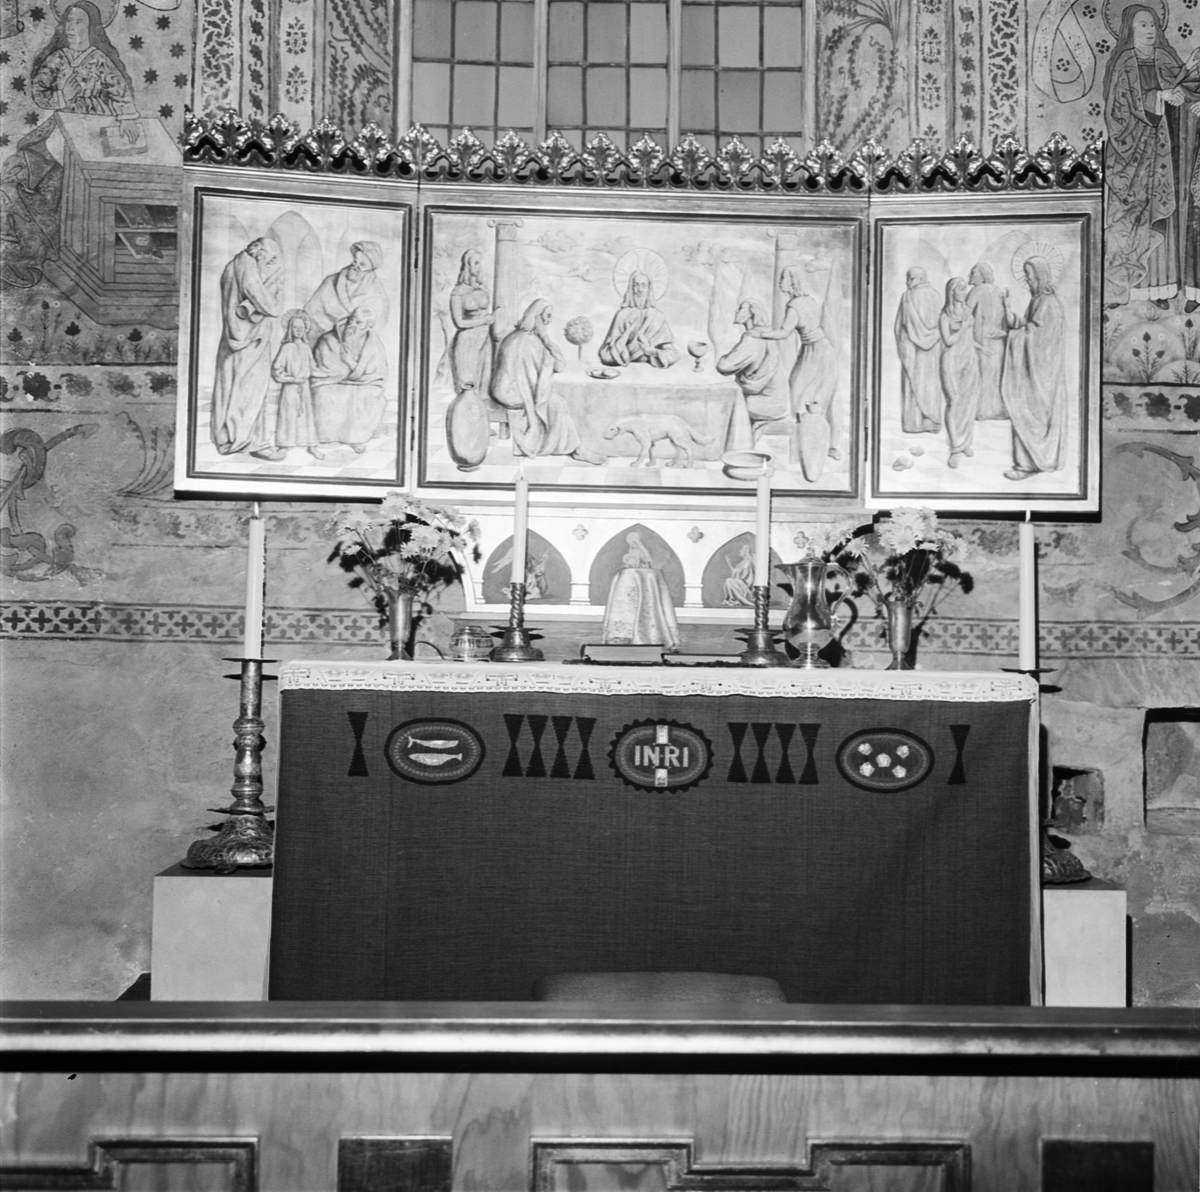 "Var finns alltavlan i Tolfta kyrka", Uppland 1968